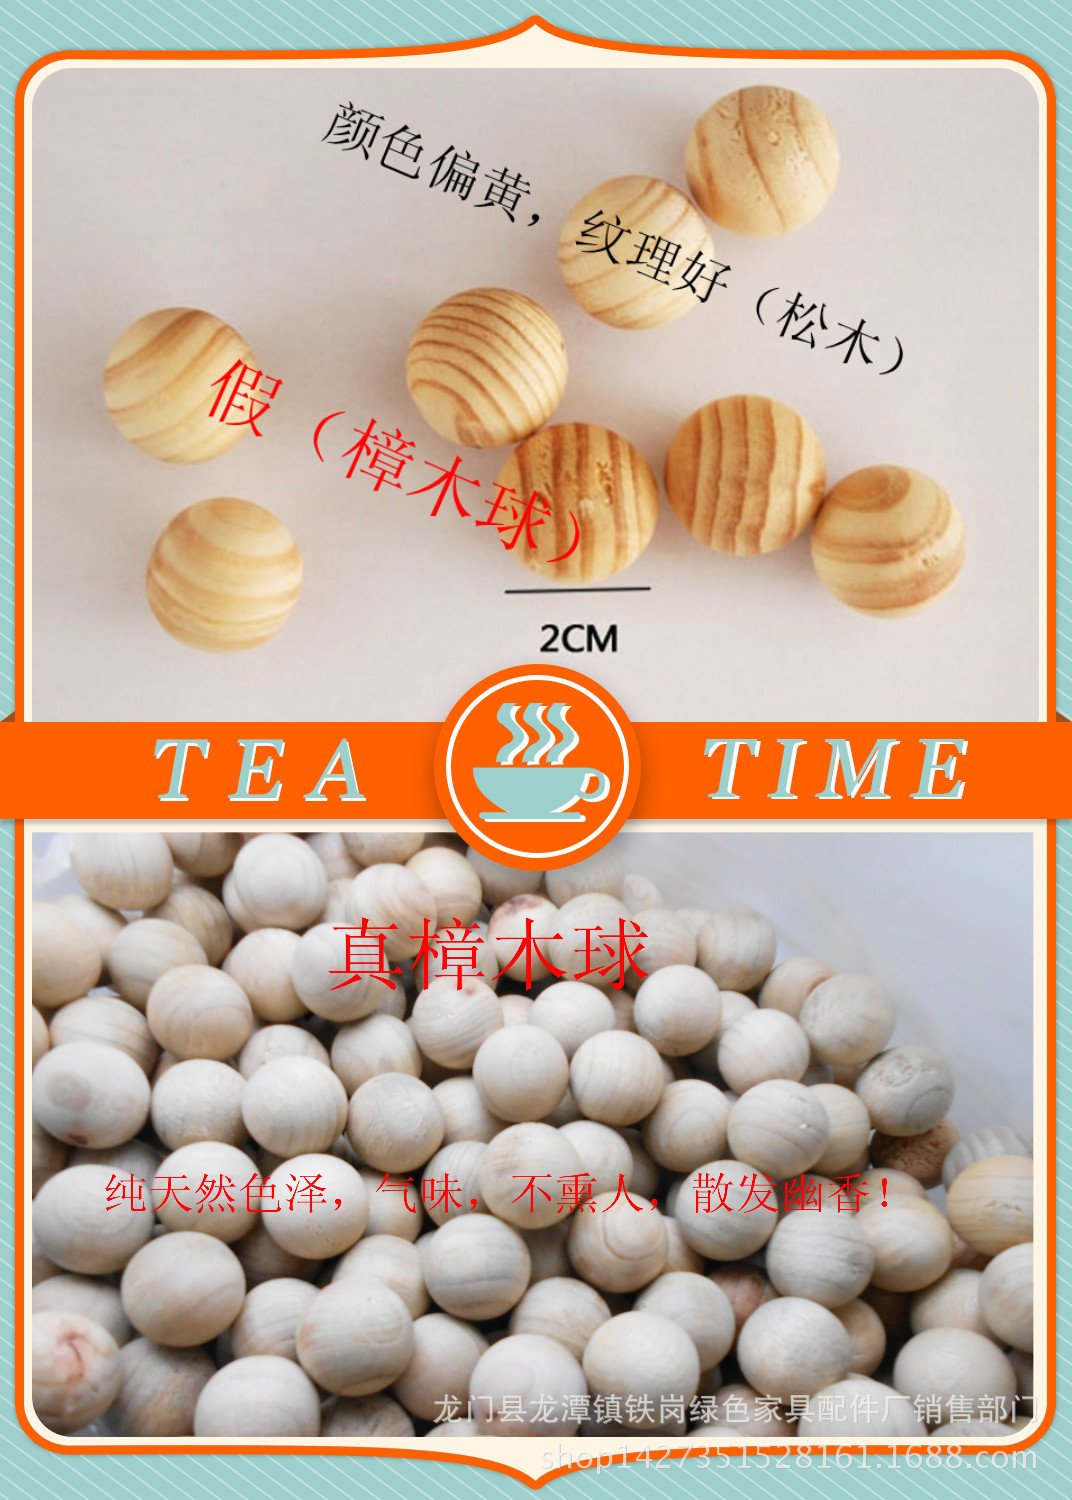 广东惠州健康创意家居,香樟木球,香樟木块,防蛀用品,四季必备价格